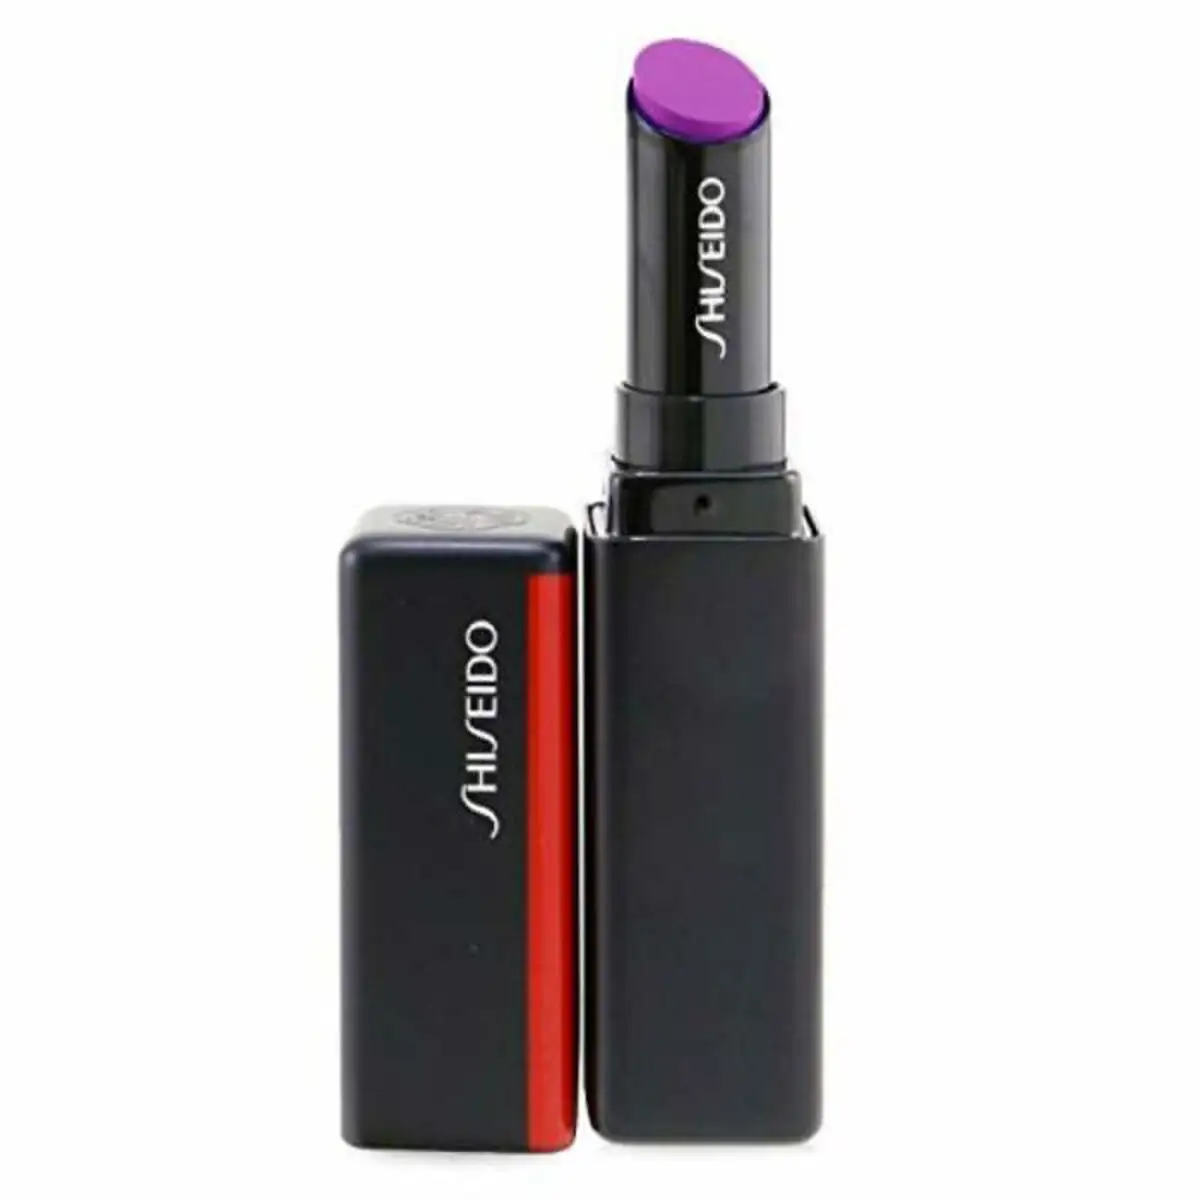 Rouge a levres color gel lip balm shiseido 114 lilac 2 g _2644. Entrez dans l'Univers de DIAYTAR SENEGAL - Où Chaque Produit est une Découverte. Explorez notre gamme variée et trouvez des articles qui vous surprennent et vous inspirent.